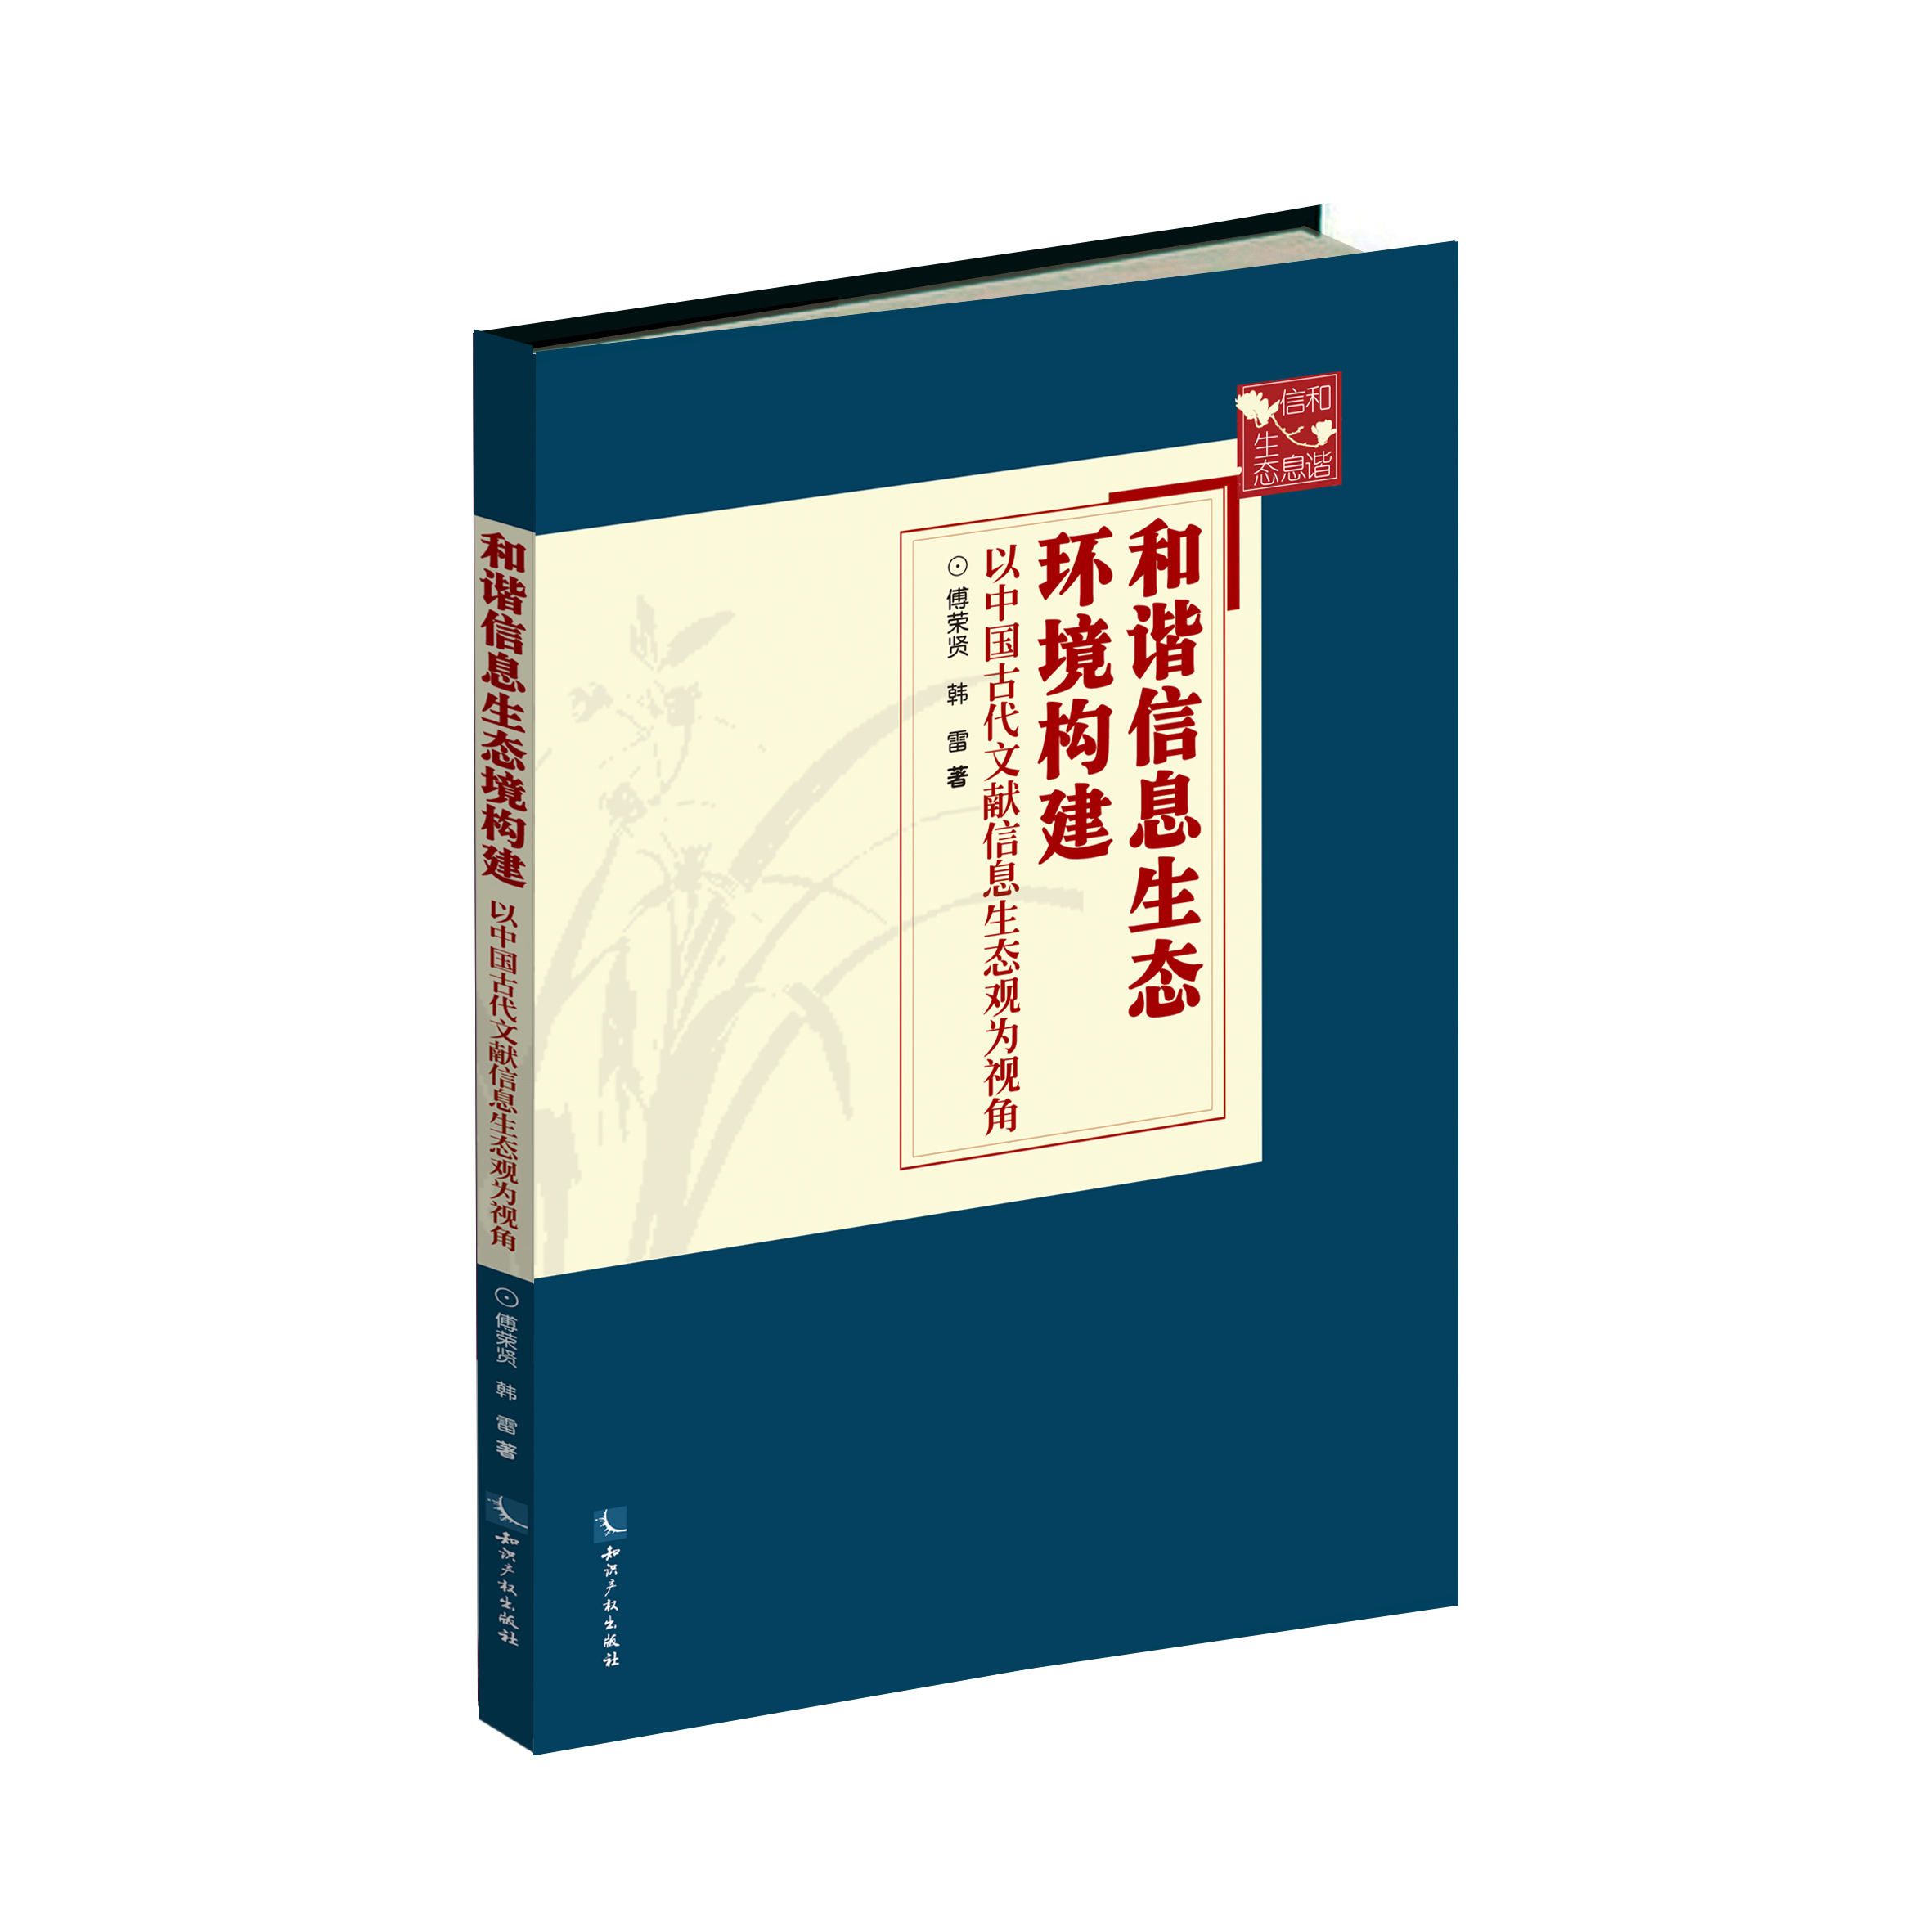 和谐信息生态环境构建——以中国古代文献信息生态观为视角